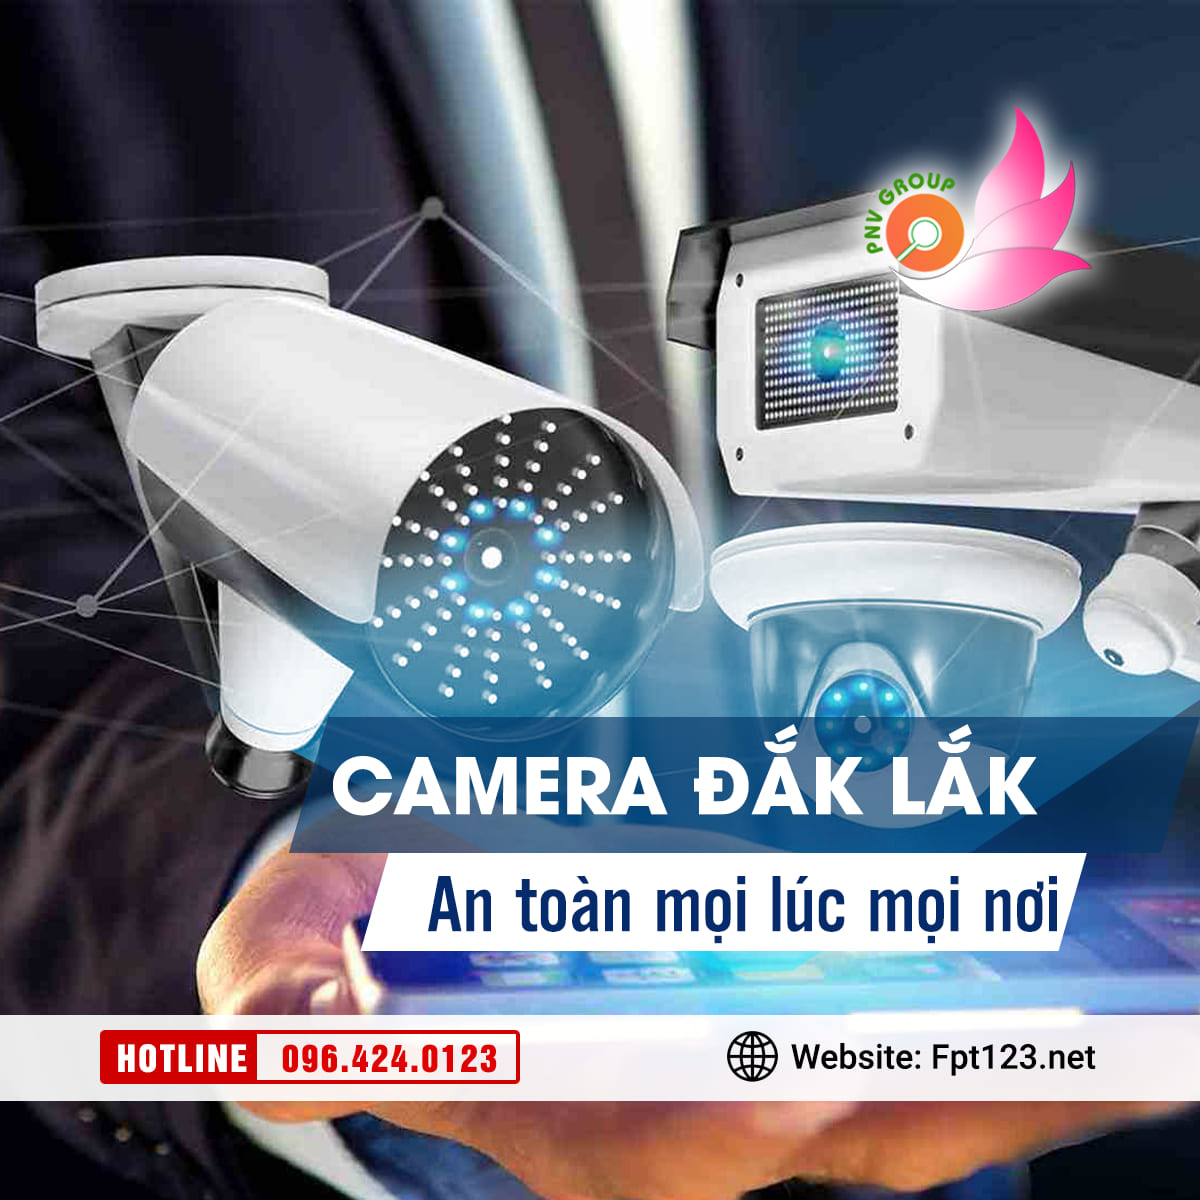 Camera Đắk Lắk an toàn mọi lúc mọi nơi